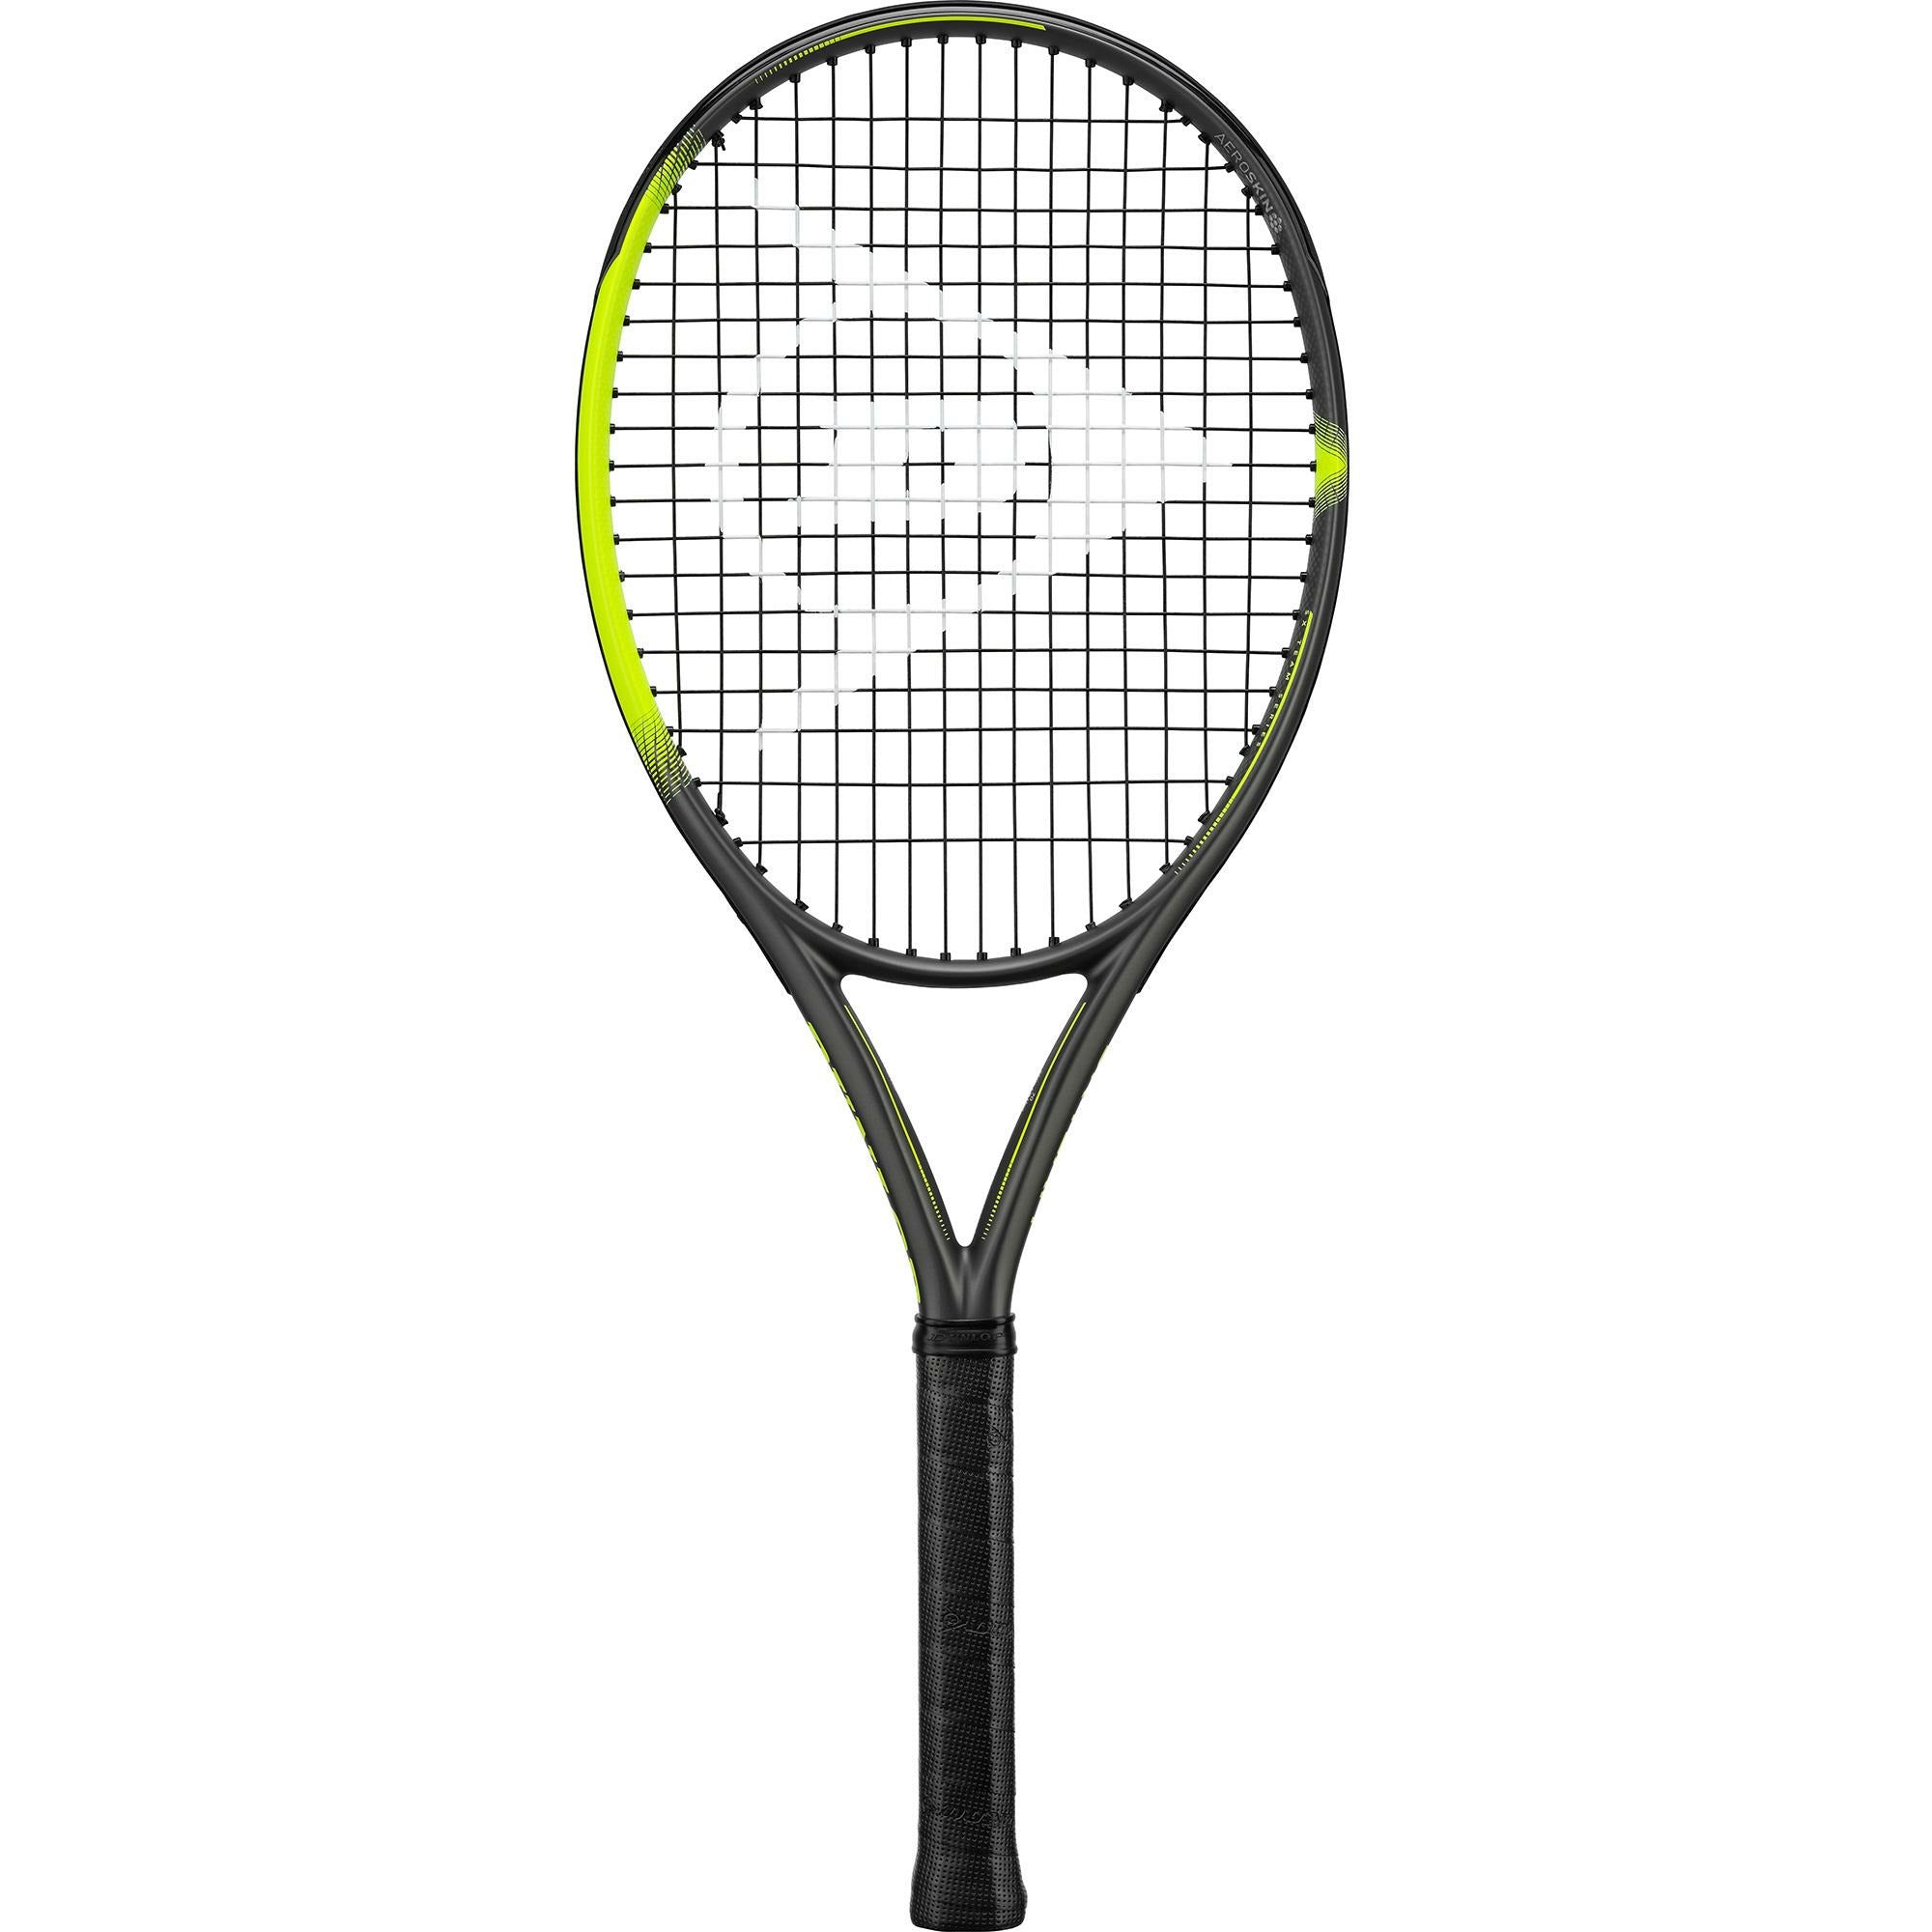 Dunlop Srixon SX Team 260 Tennis Racket